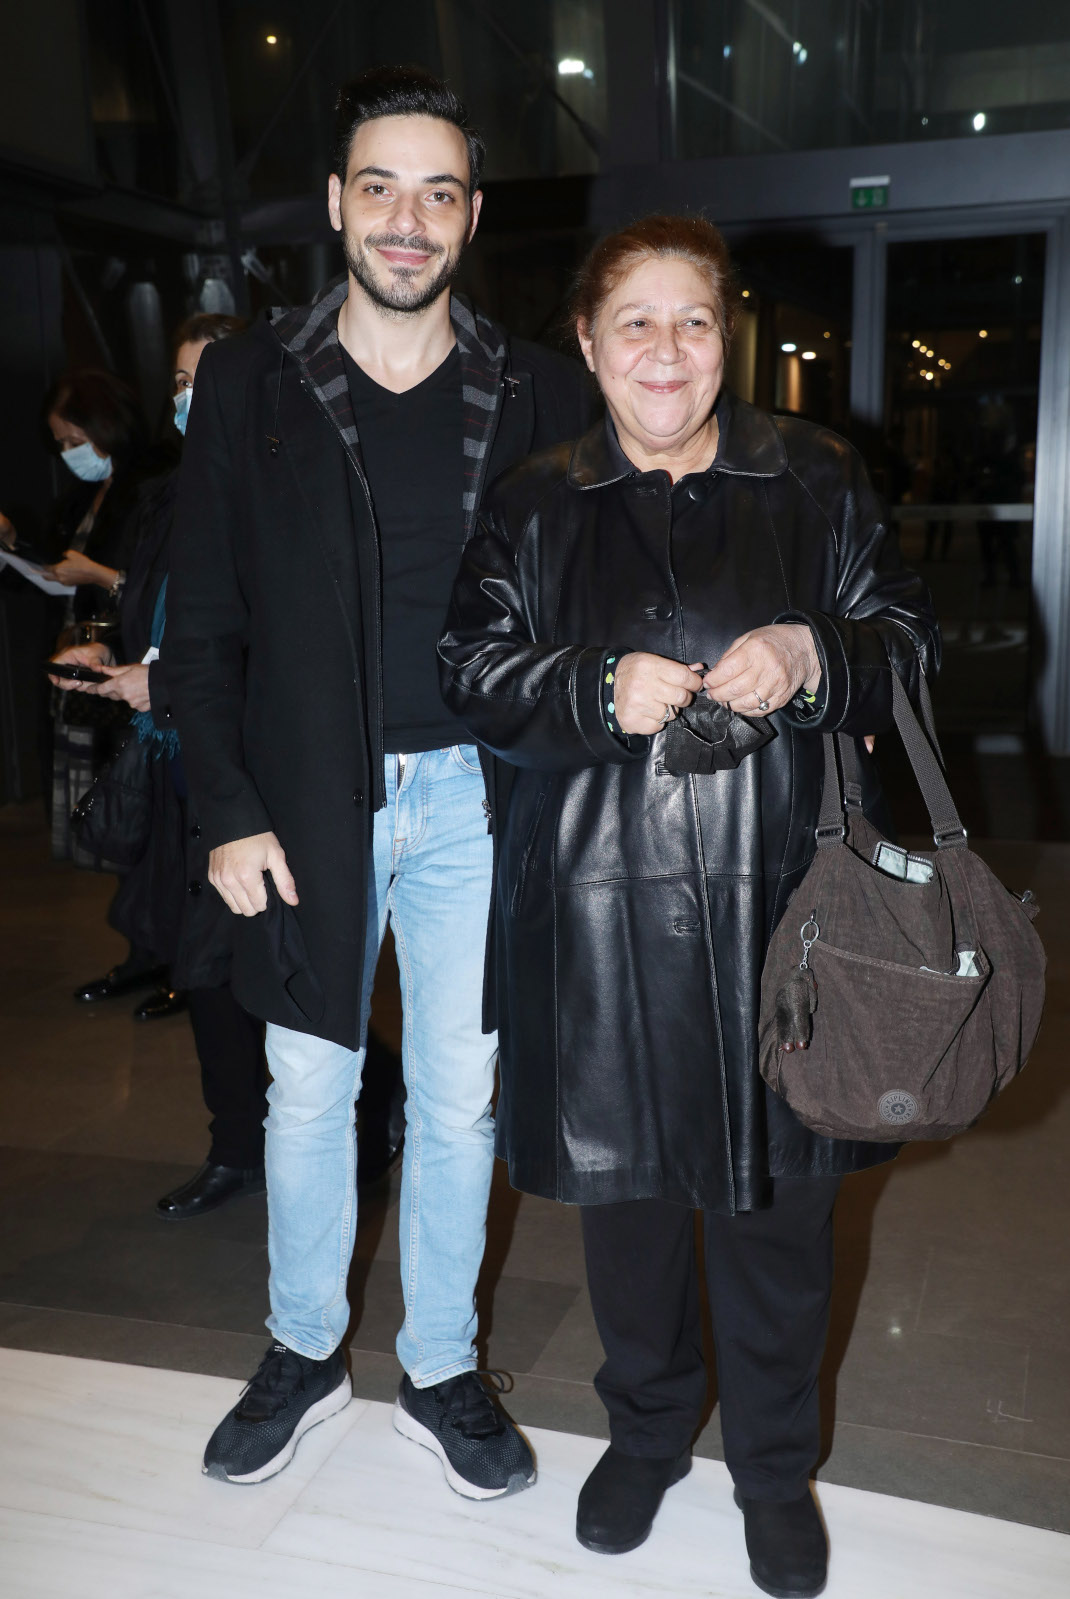 Η Χριστίνα Τσάφου στο θέατρο με τον γιο της- Είναι παντρεμένος με γνωστή ηθοποιό! (εικόνες)